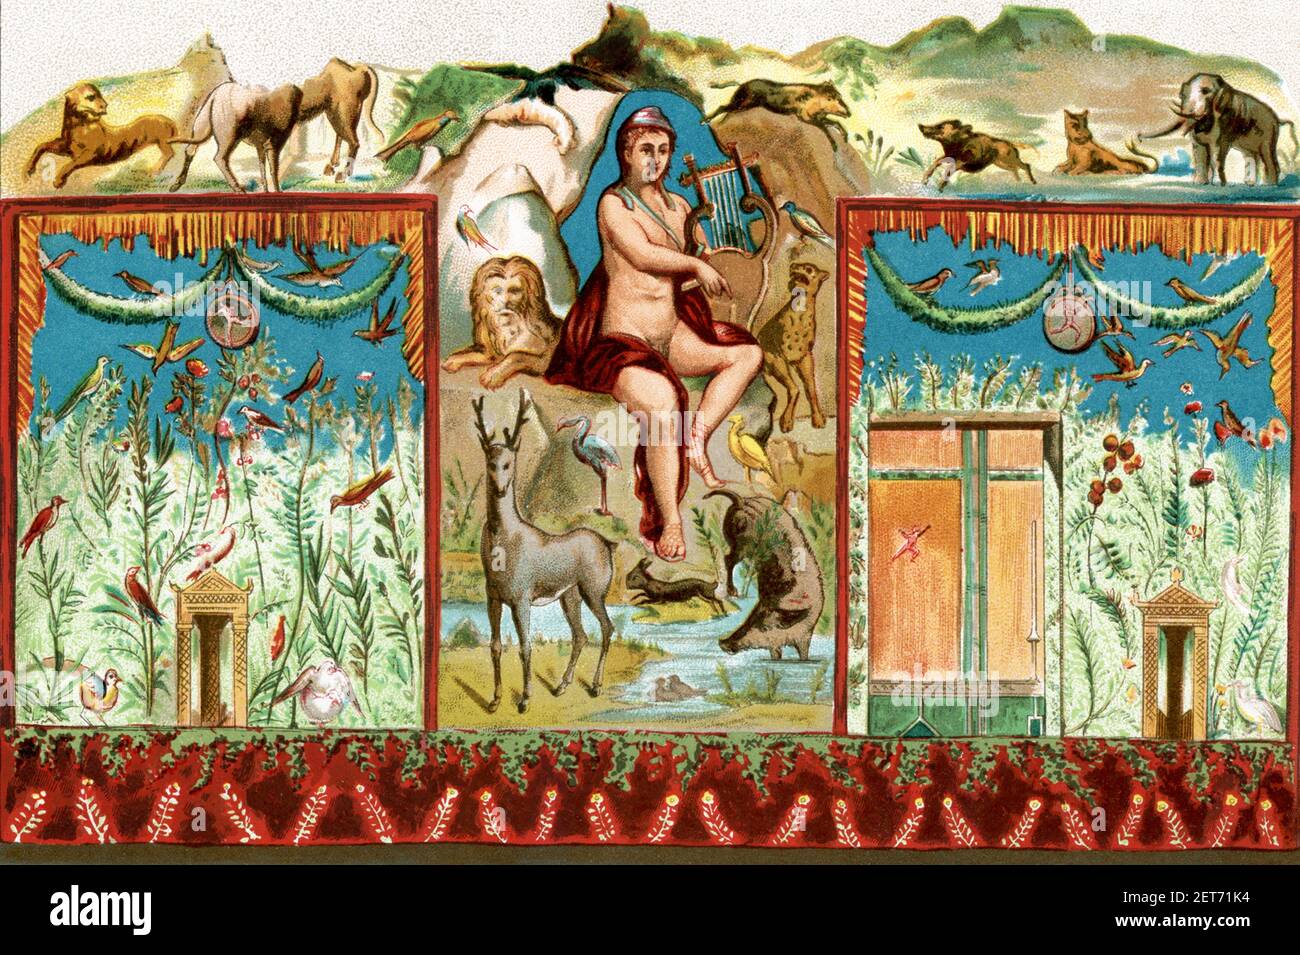 Cette illustration des années 1880 montre une fresque découverte à Pompéi d'Orpheus enchantant les animaux avec son lyre jouant. Dans la mythologie grecque, Orpheus était un célèbre barde thrace dont la musique lyre charlait même le plus sauvage des animaux et même des plantes, des arbres et des rochers (comme on l'a vu ici). Fils de la Muse Calliope, il a épousé la nymphe Eurydice après avoir participé à l'expédition Argonaut. Selon la mythologie grecque, après qu'un serpent l'ait tuée, Orpheus est allé à Hadès (le monde sous-jacent) pour la chercher. Charmé par sa musique, les dieux l'ont libérée, mais à condition qu'il ne la regarde pas jusqu'à ce qu'il atteigne le haut Banque D'Images